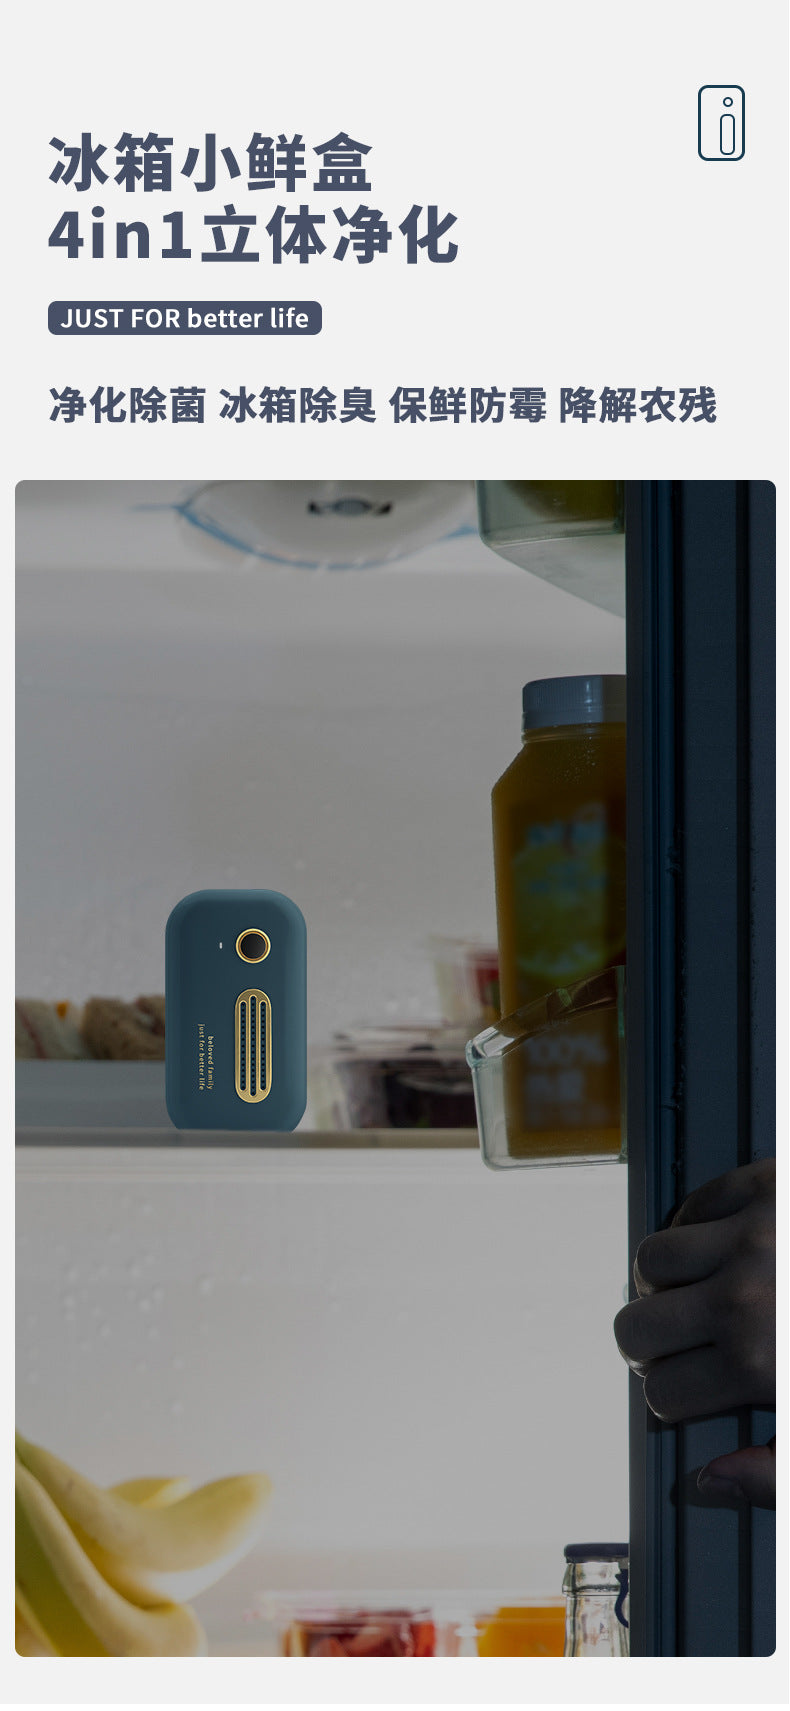 冰箱臭氧除味器 车载衣柜除菌器杀菌消毒去除异味净化器